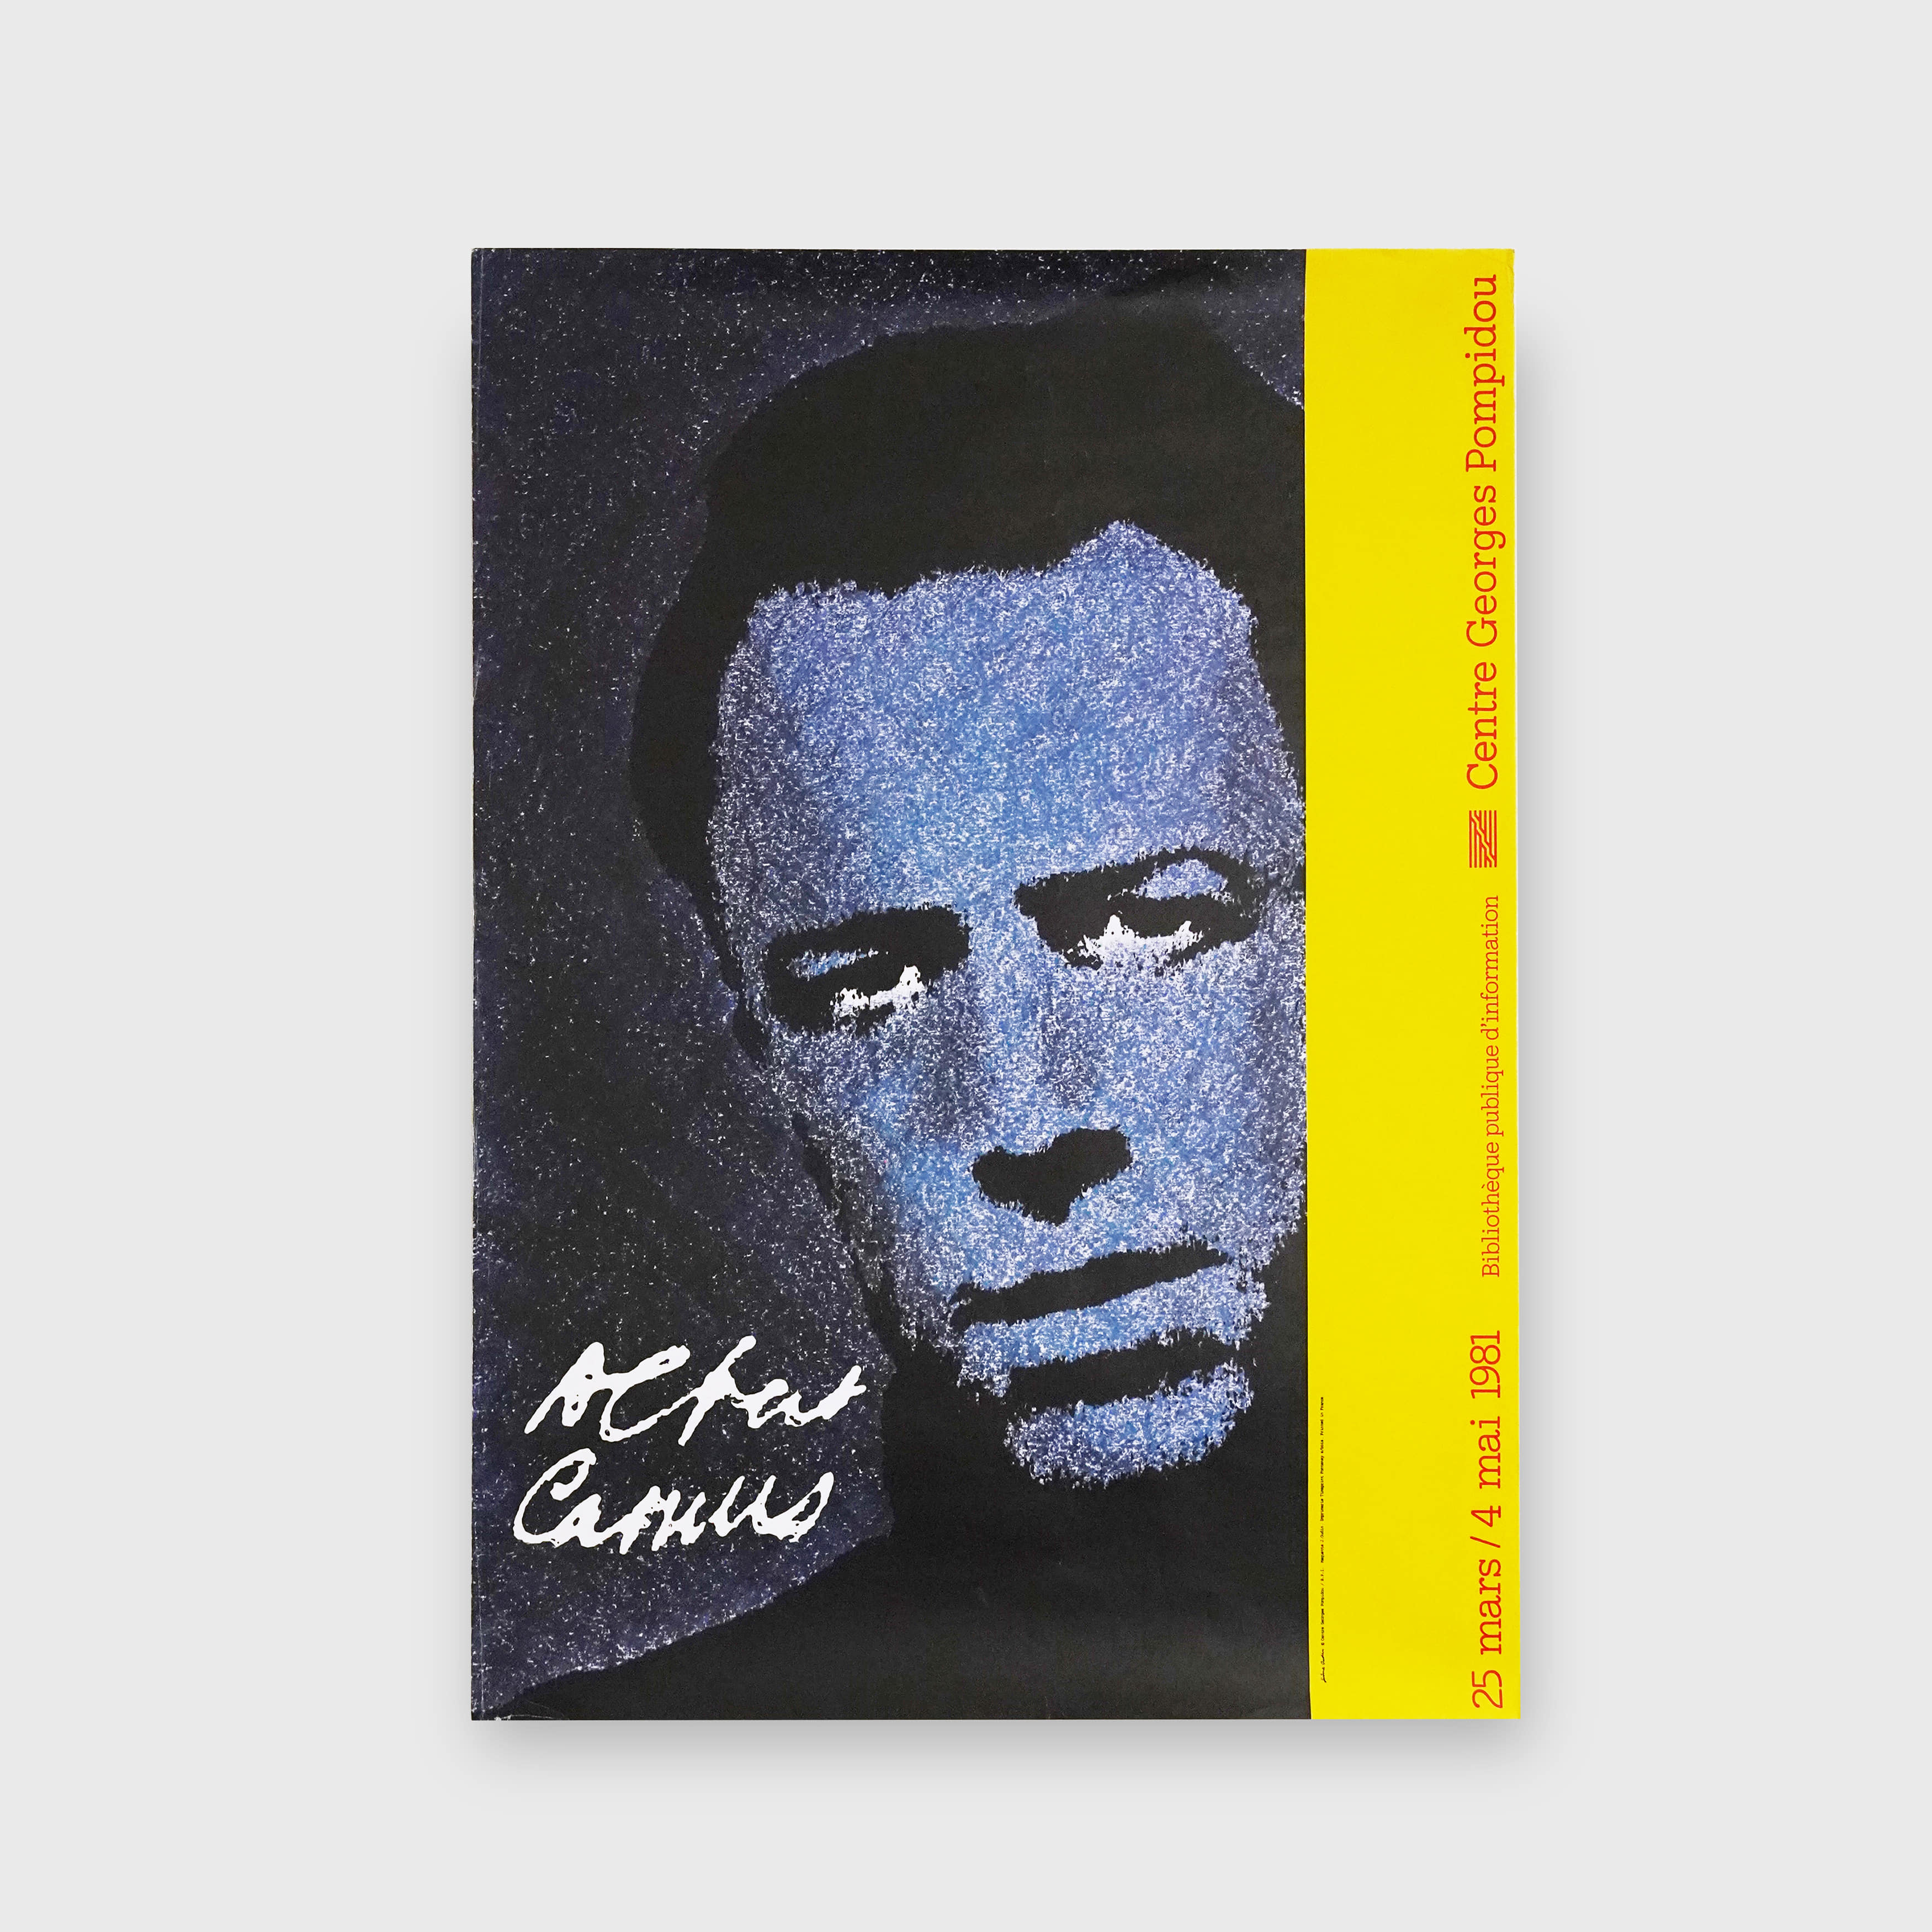 Albert Camus 1981